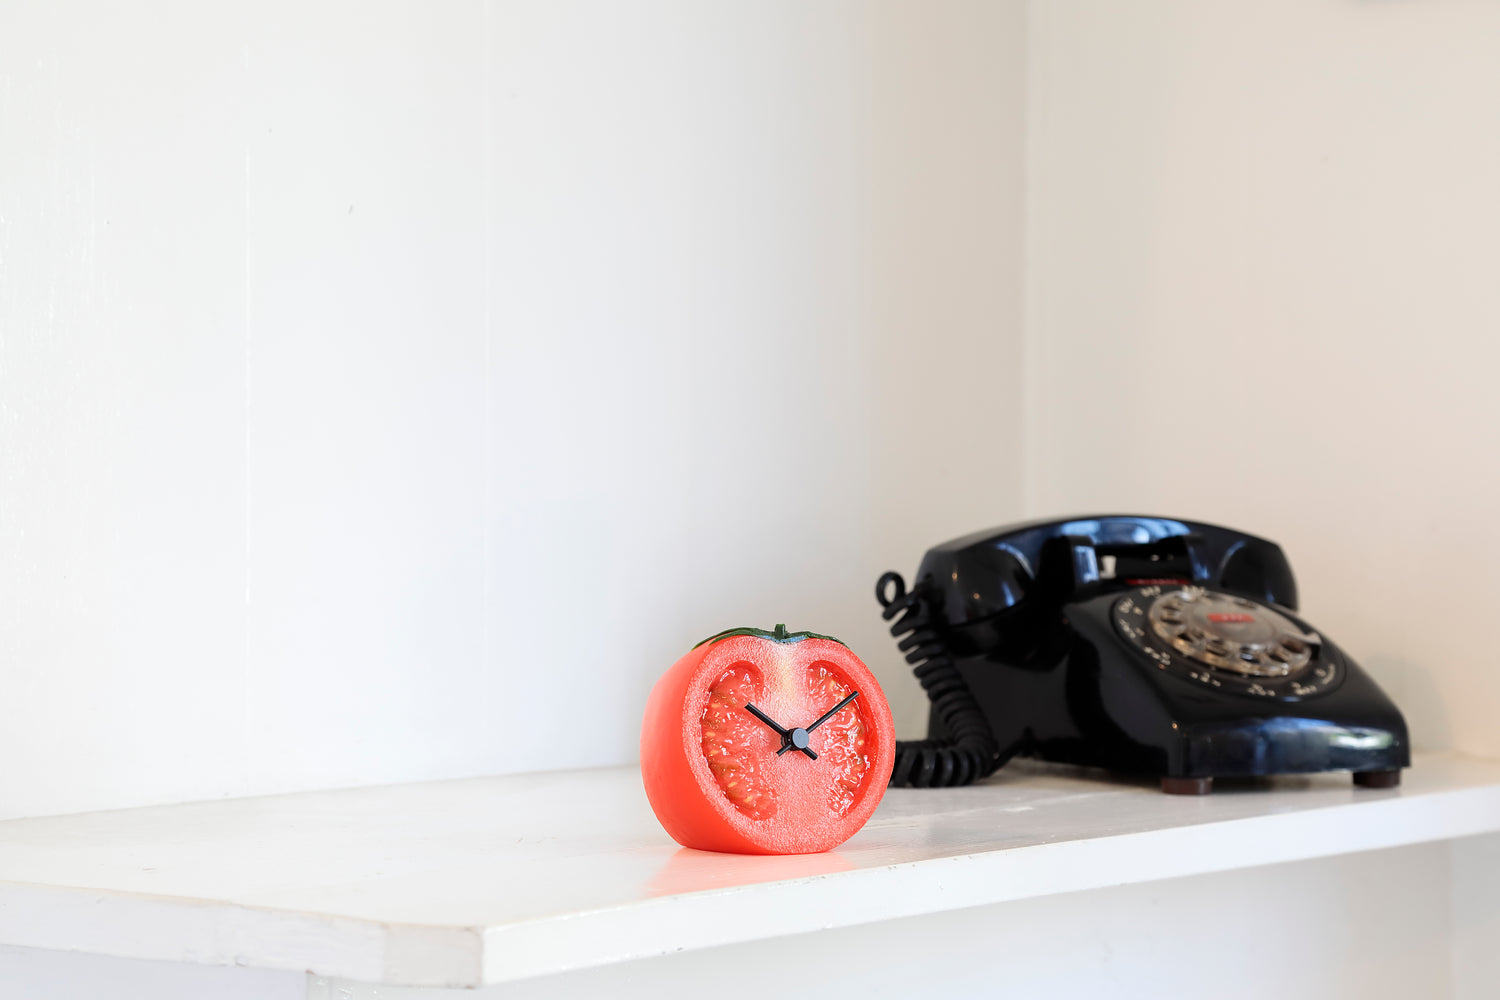 元祖食品サンプル屋「Replica Food Clock トマト」のイメージ画像です。